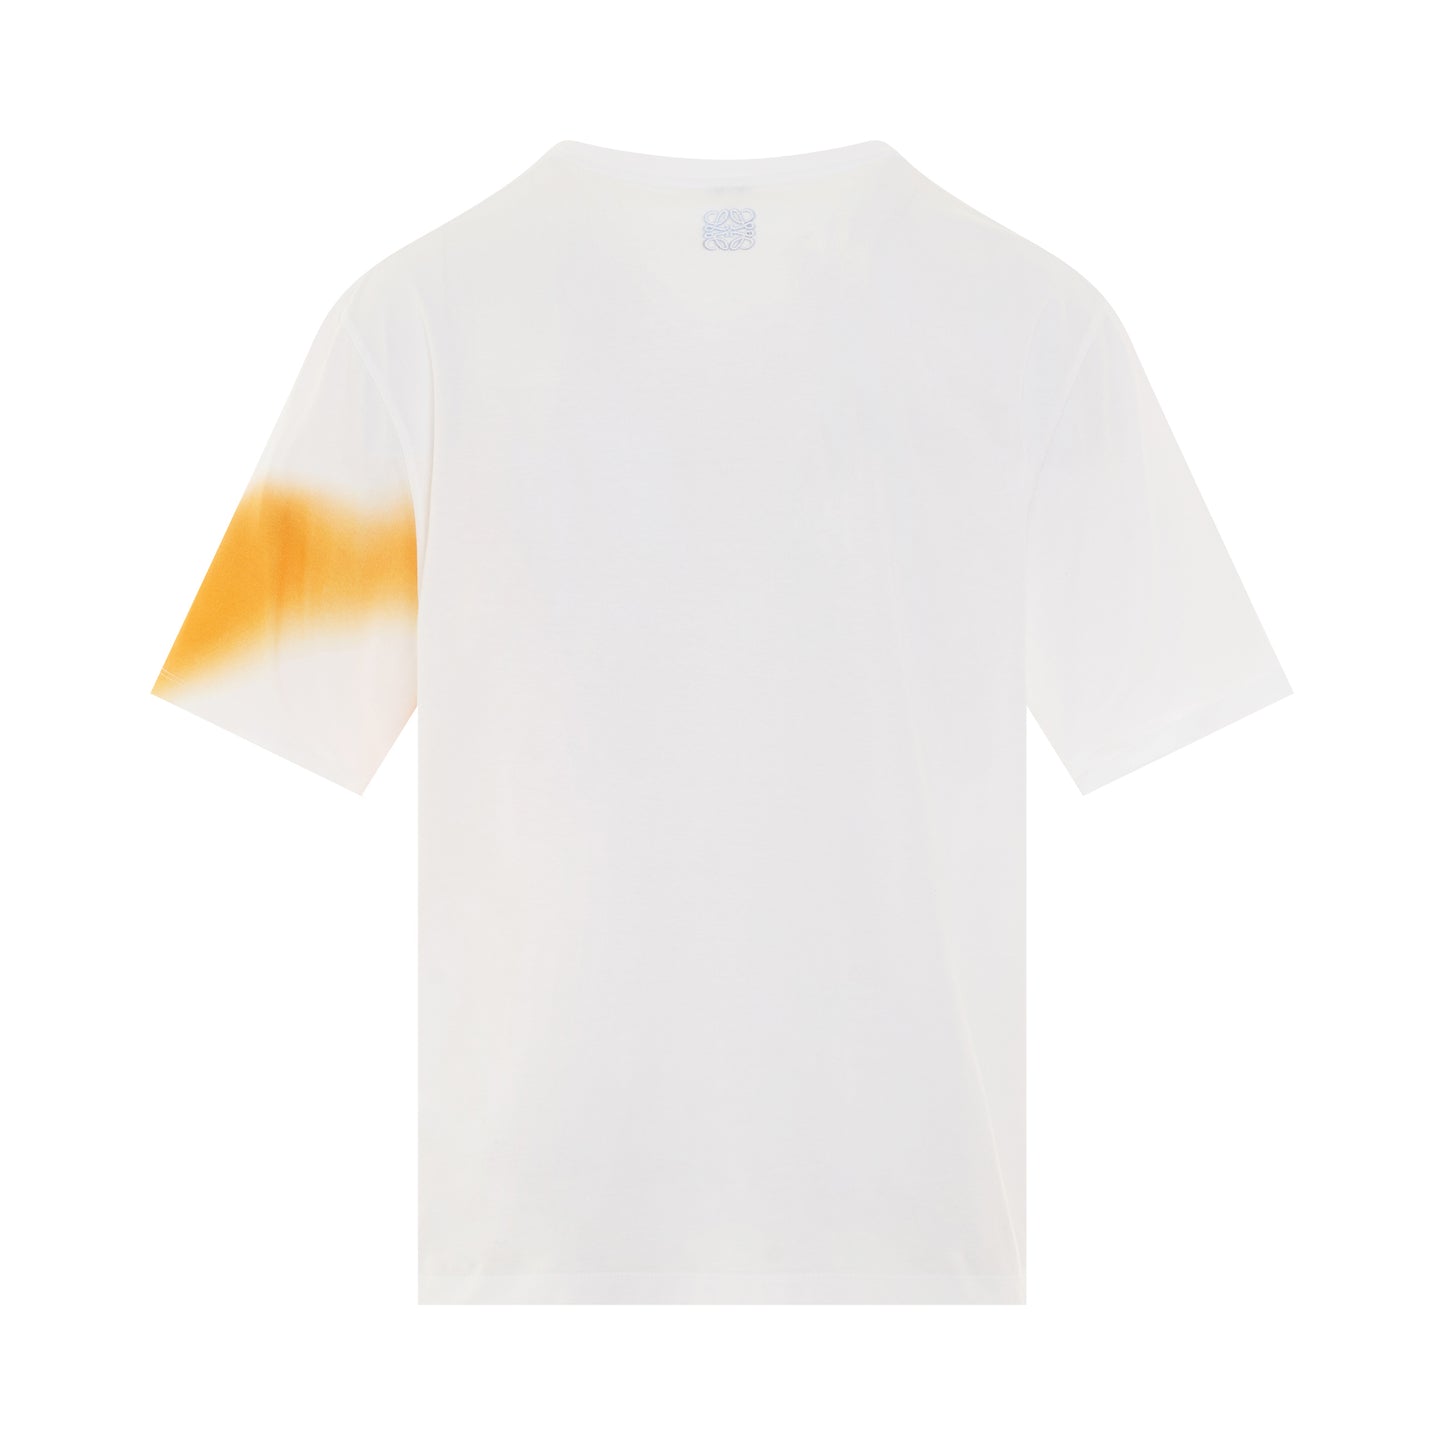 Shadows Print T-Shirt in White